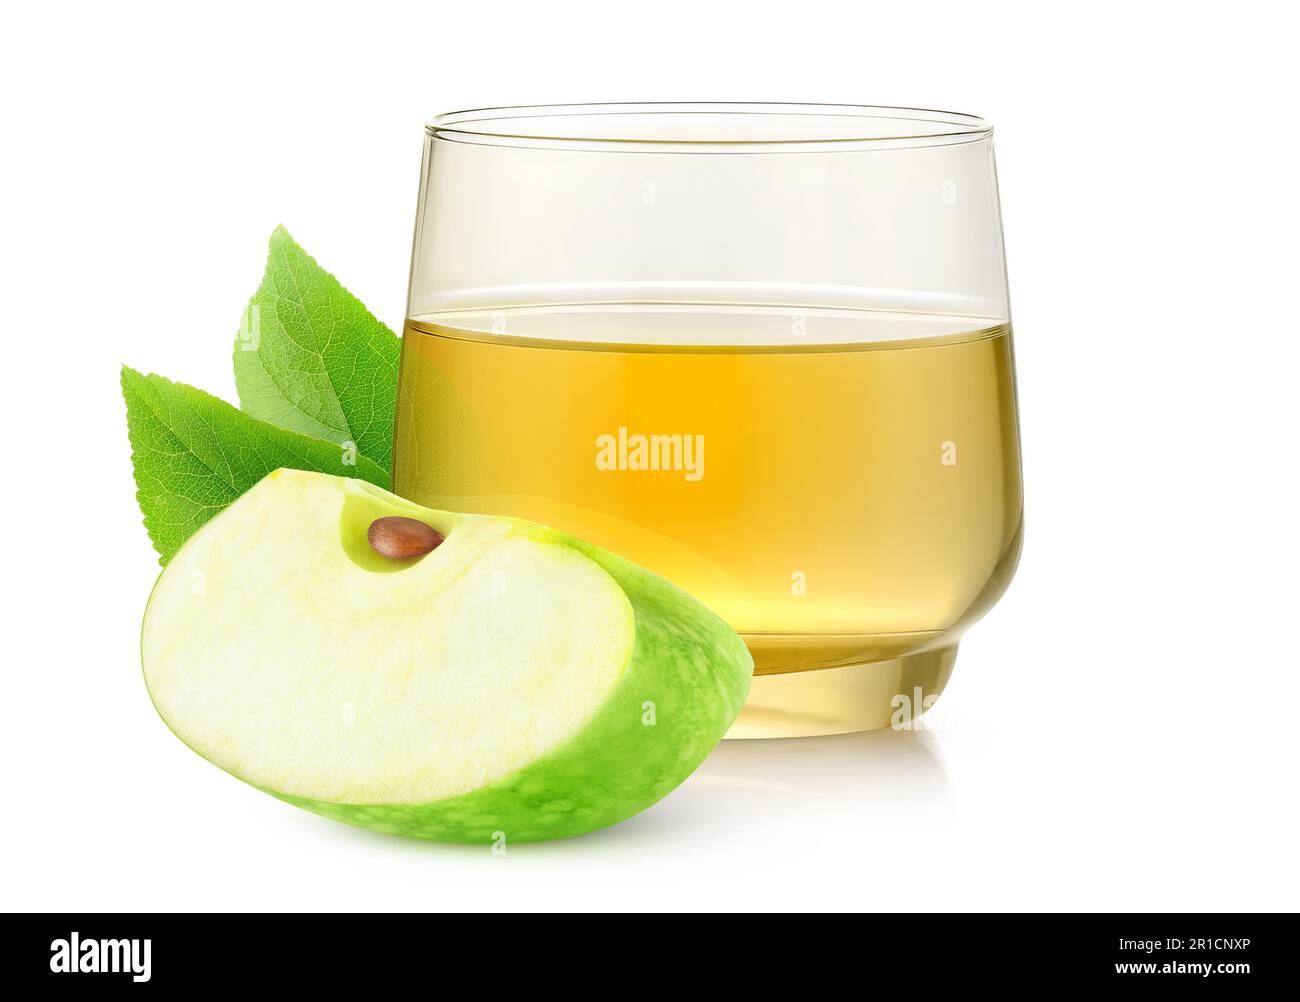 Morceau de pomme verte et verre de jus, isolé sur fond blanc Banque D'Images